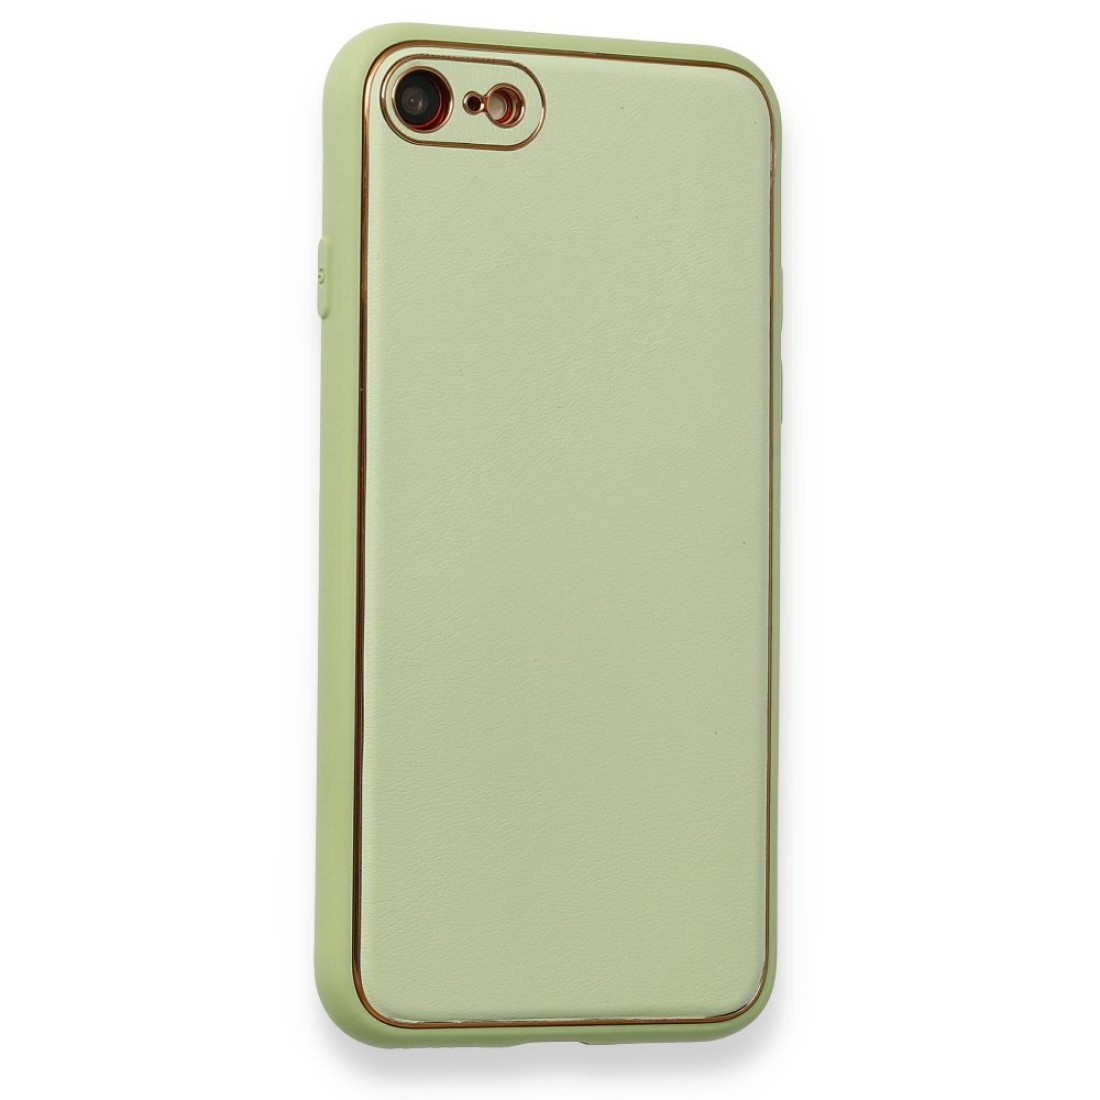 Apple iPhone 8 Kılıf Coco Deri Silikon Kapak - Açık Yeşil